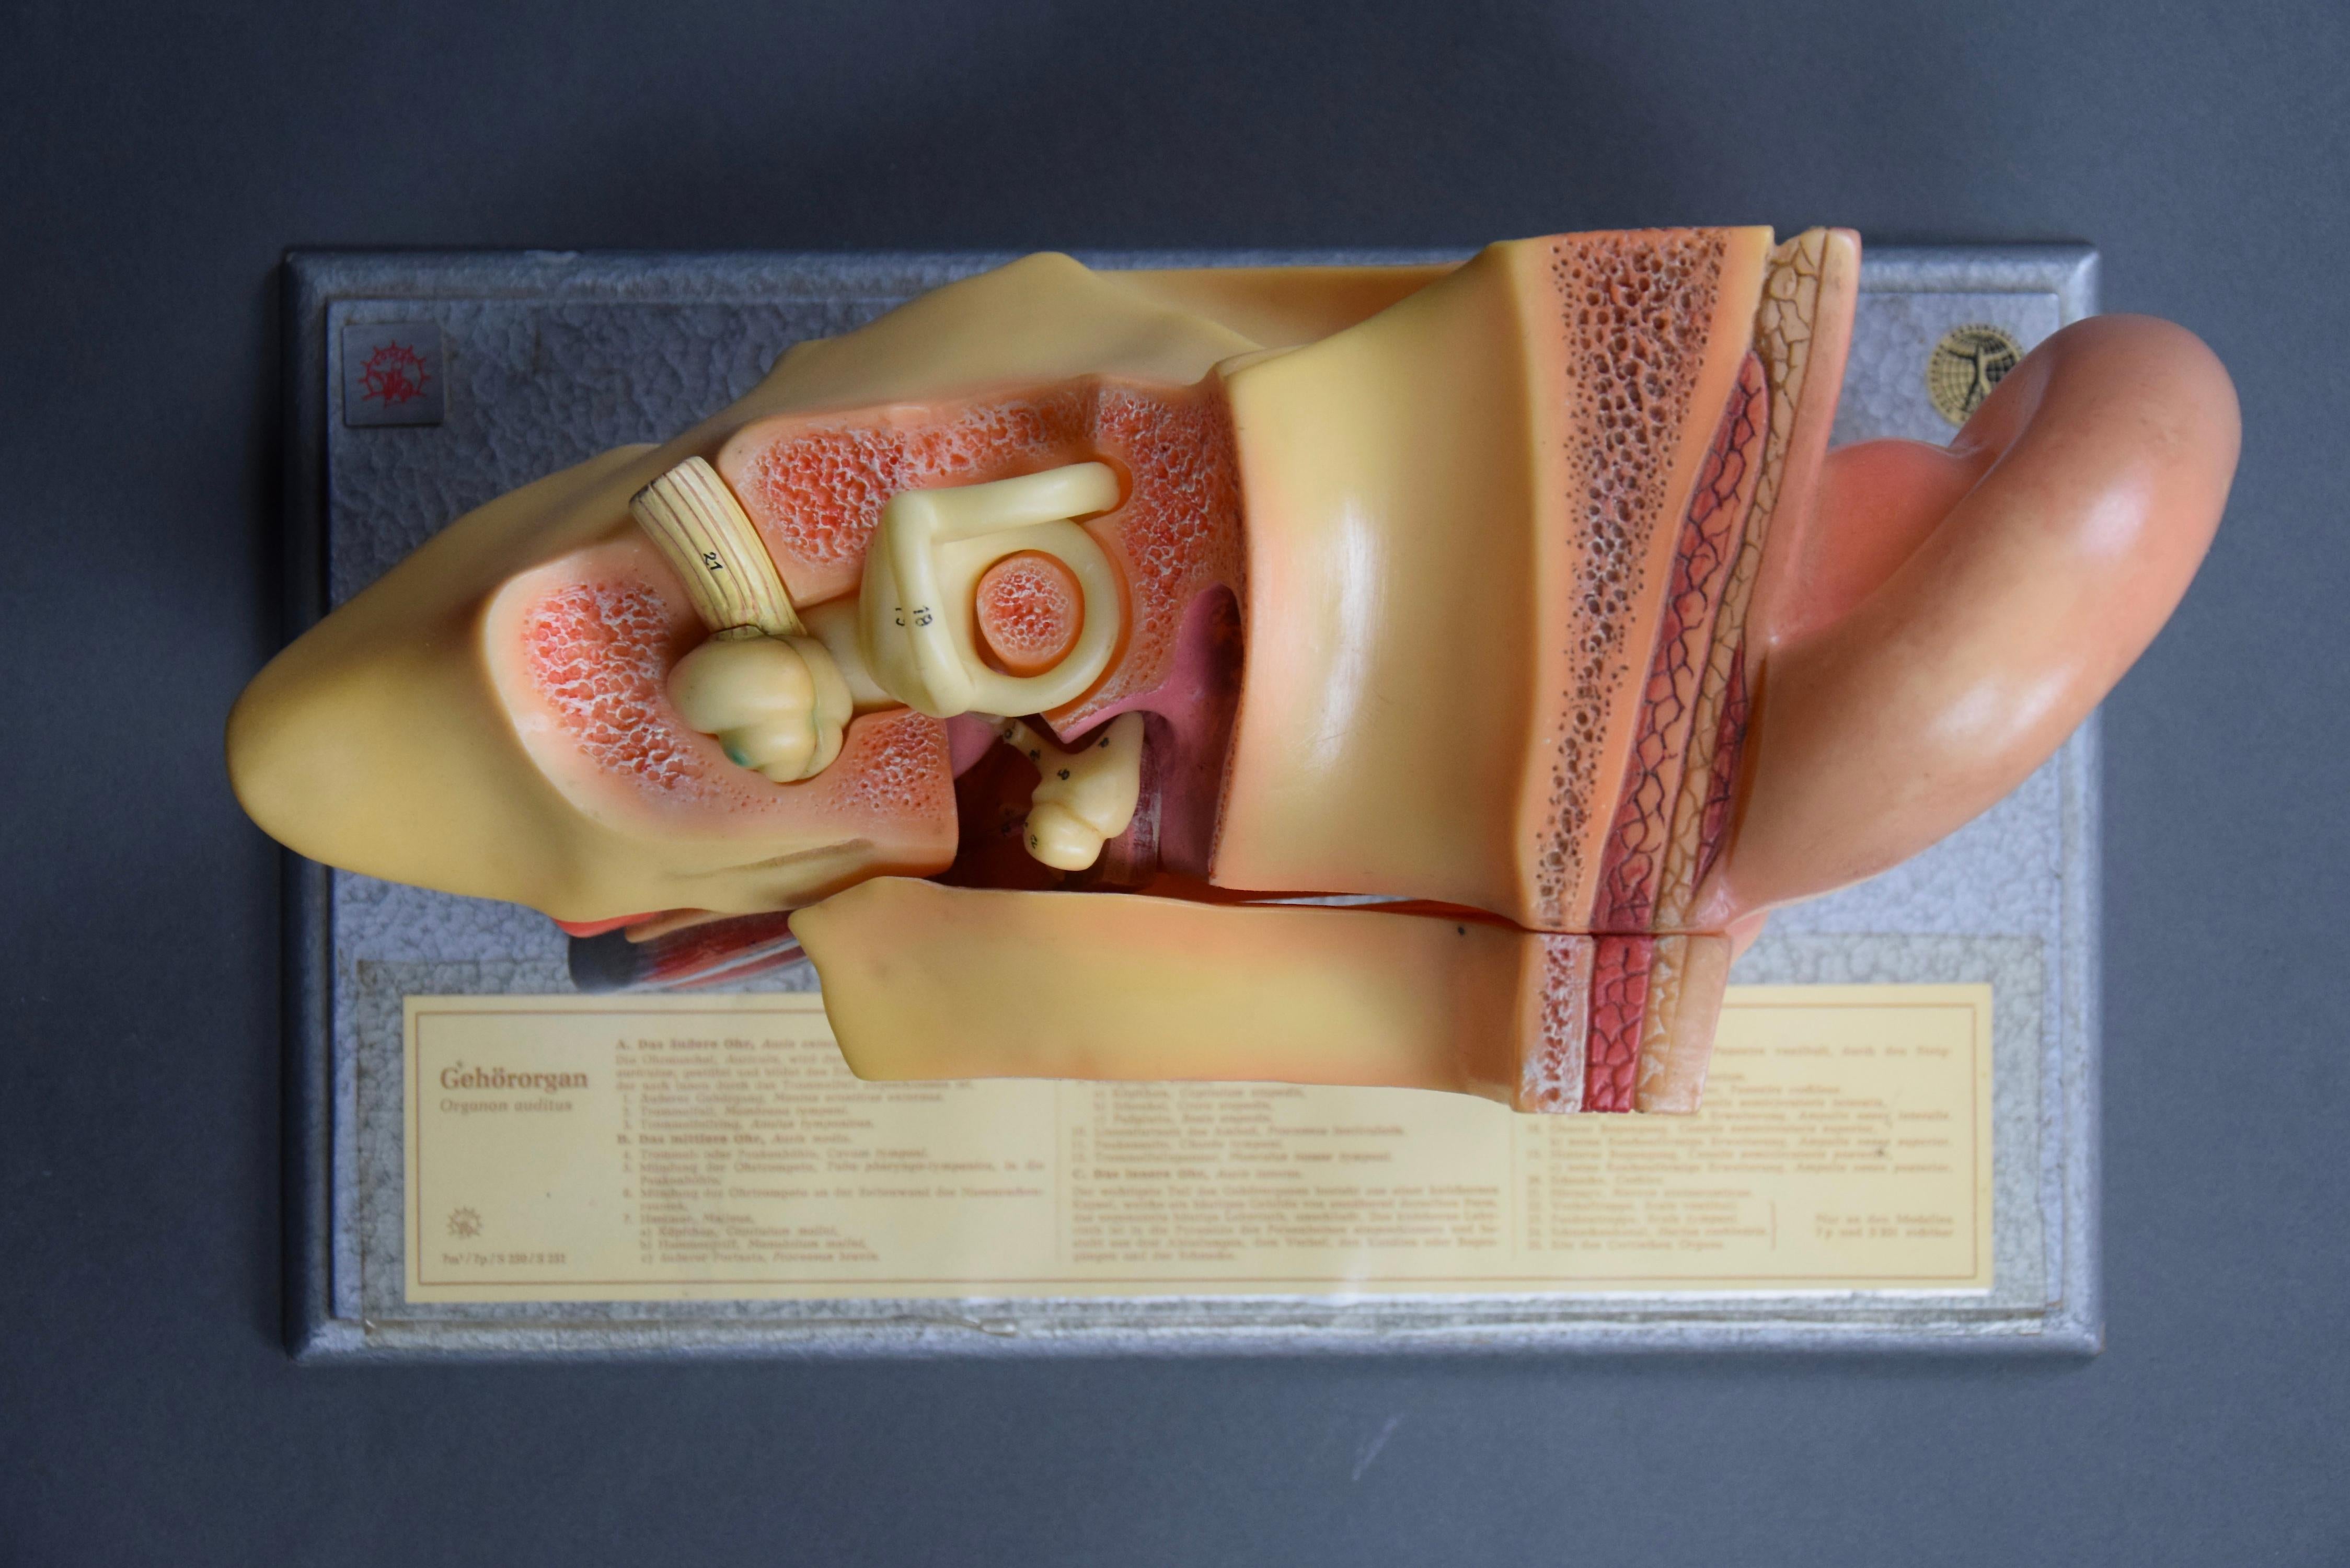 Voici le modèle anatomique Mid Century Organon Auditus de SOMSO, un véritable chef-d'œuvre dans le monde des modèles anatomiques ! Ce modèle étonnant, fabriqué dans l'ancienne Allemagne de l'Est, est doté d'un organe amovible qui permet d'étudier en